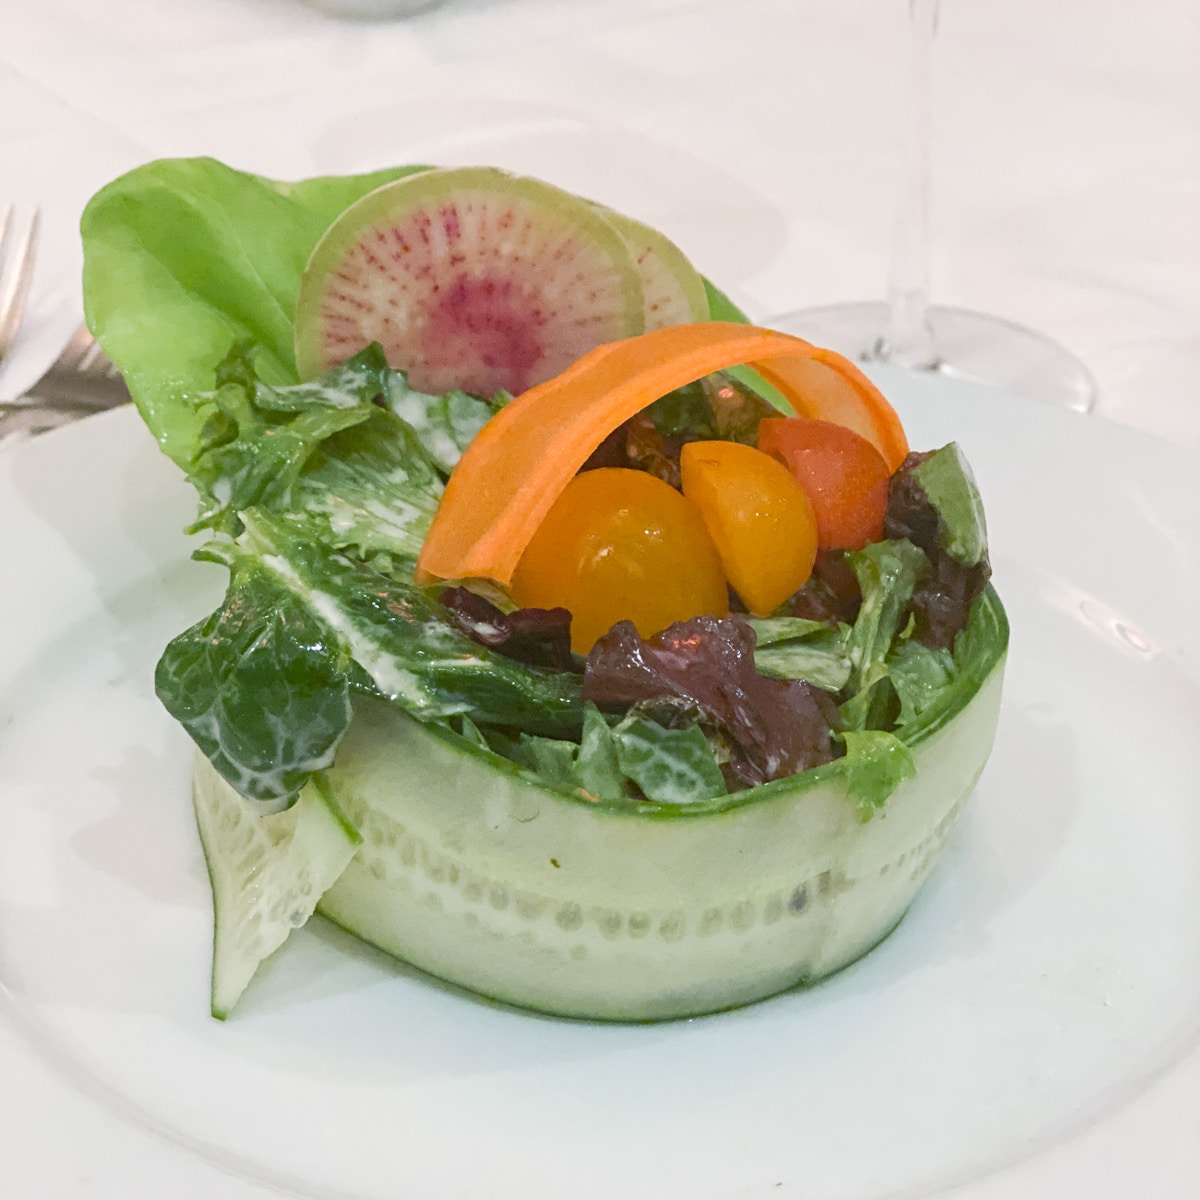 salad at caretta's restaurant